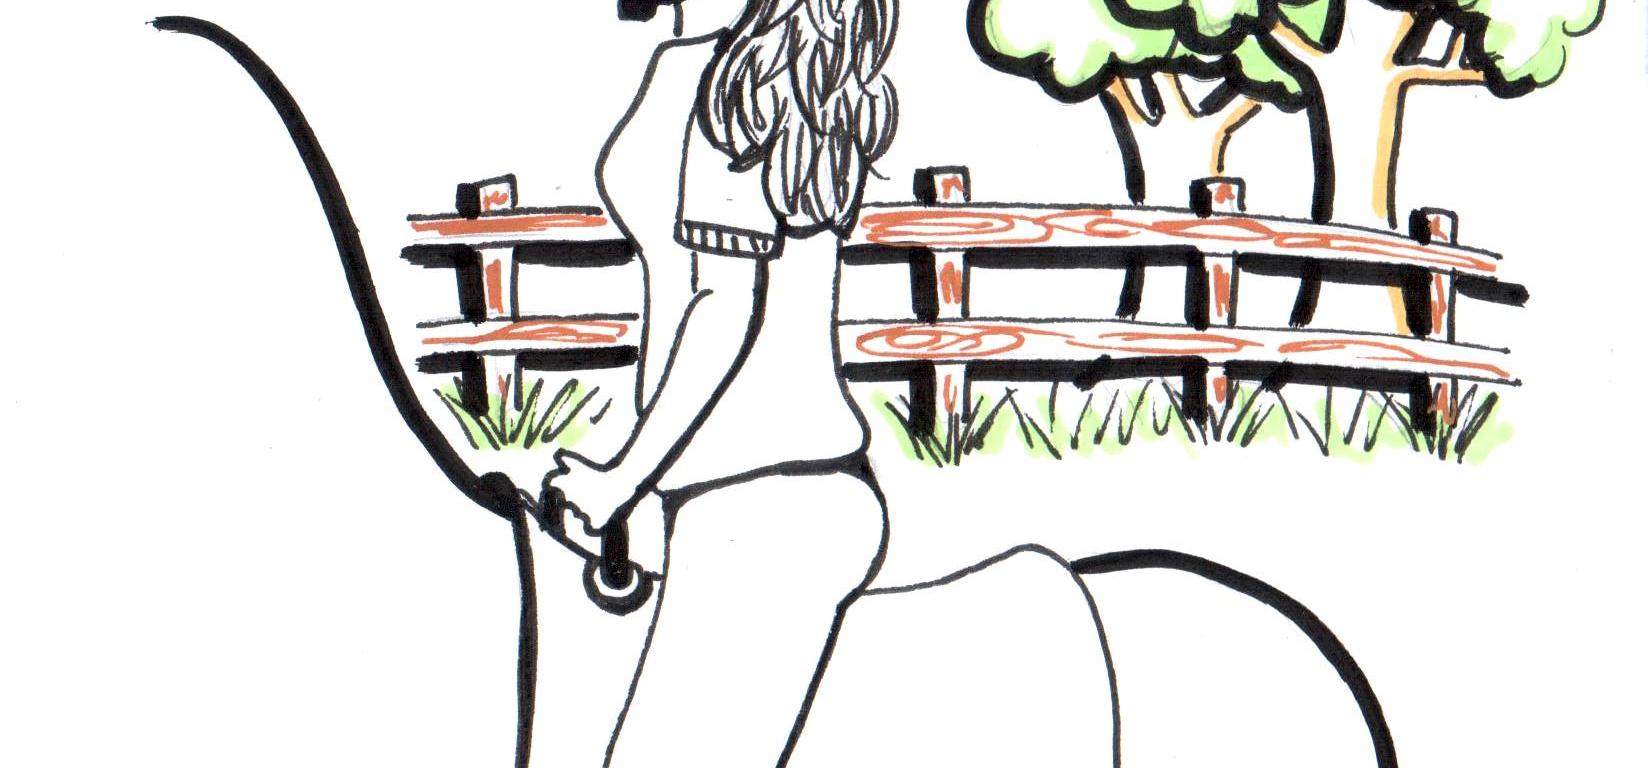 Desenho de uma praticante de Equoterapia montada um cavalo e no fundo árvores, cerca, nuvens, sol e pássaros.